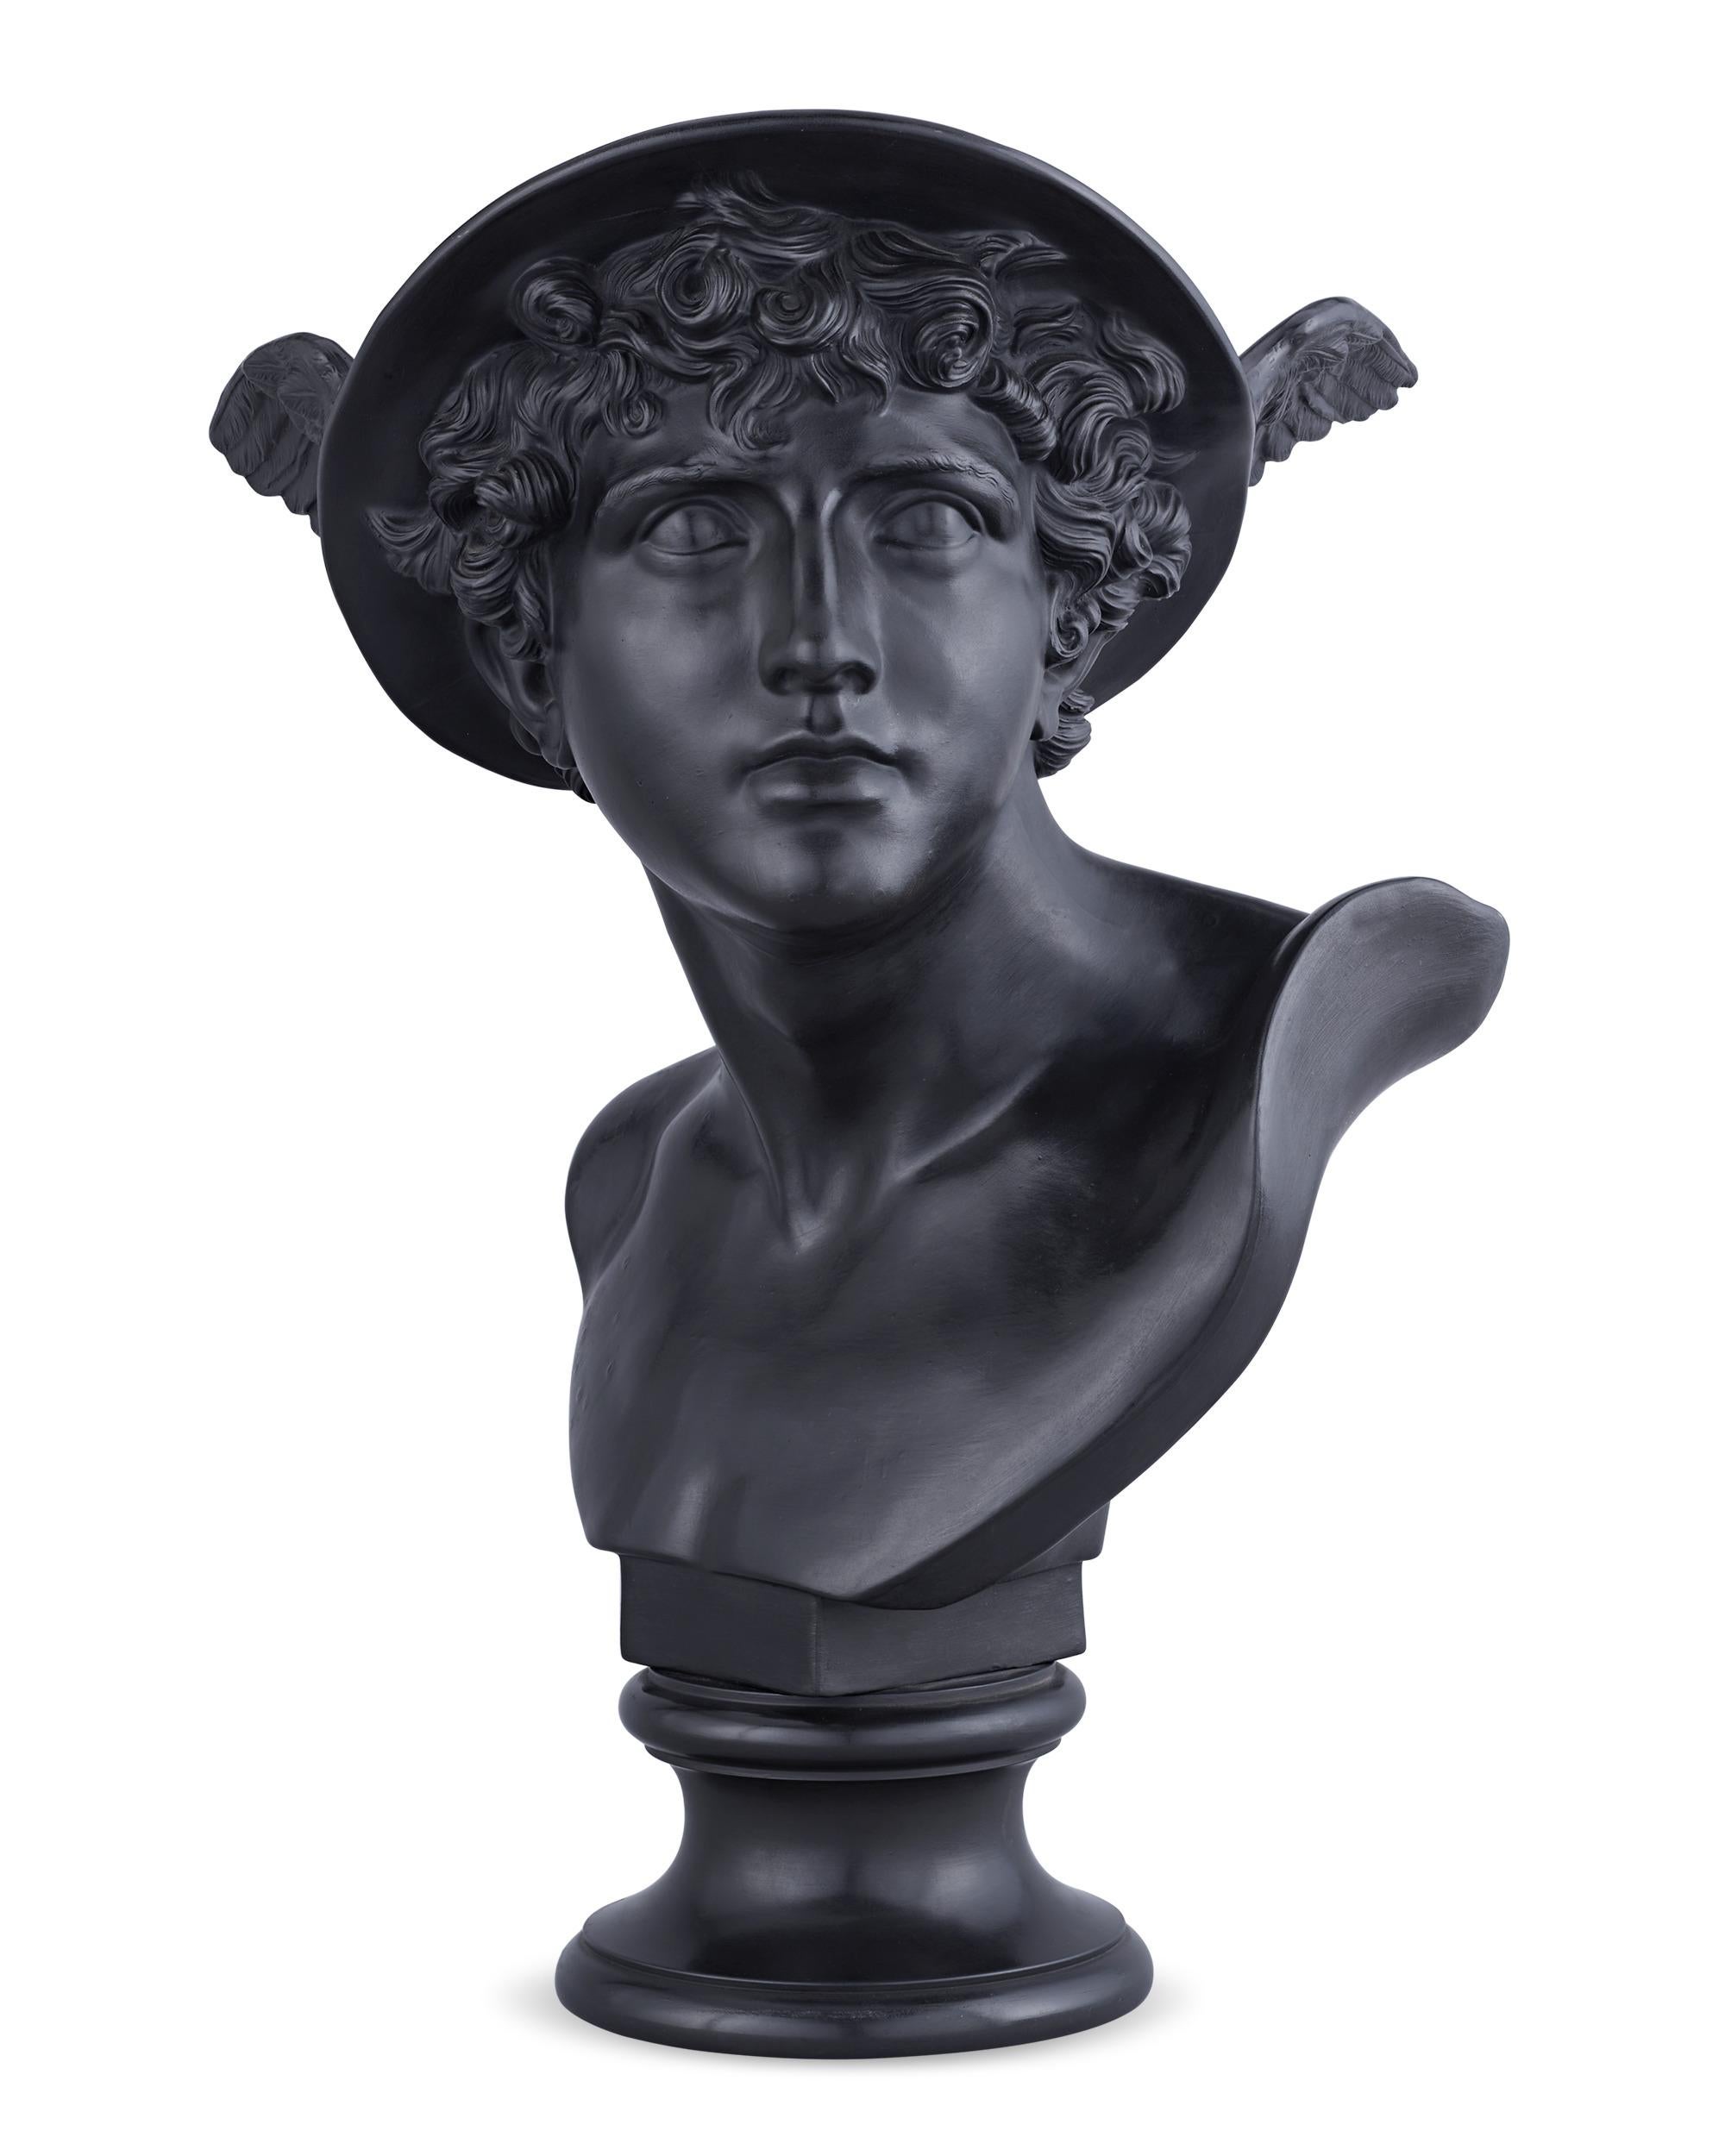 Ce modèle est attribué à John Flaxman, JR, un célèbre sculpteur, illustrateur et designer anglais, considéré comme l'un des principaux artistes du style néoclassique en Angleterre. Dans ce buste en basalte noir, rendu de manière experte, Mercure, le